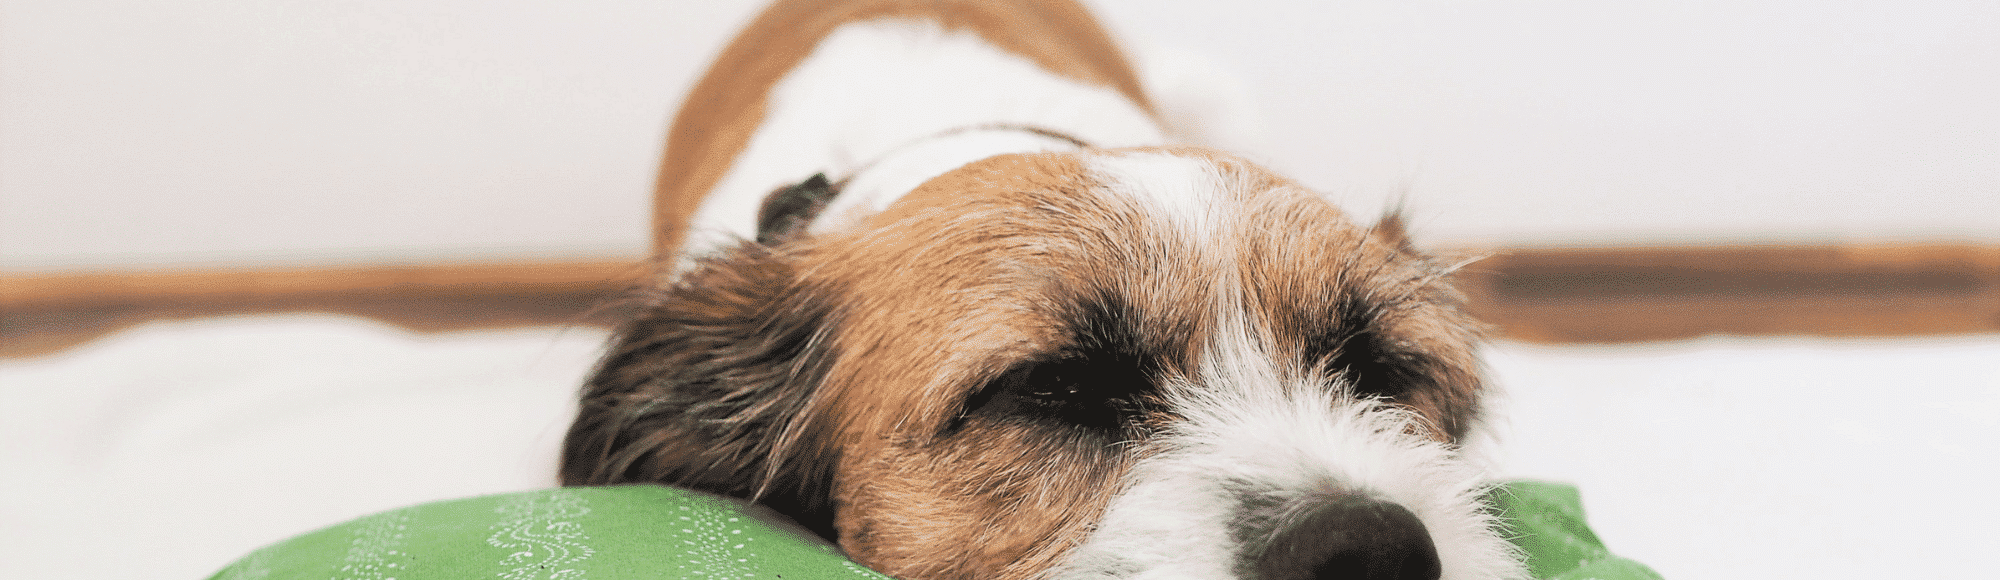 Jack Russel Terrier mit langem Fell liegt mit dem Kopf auf einem Kissen